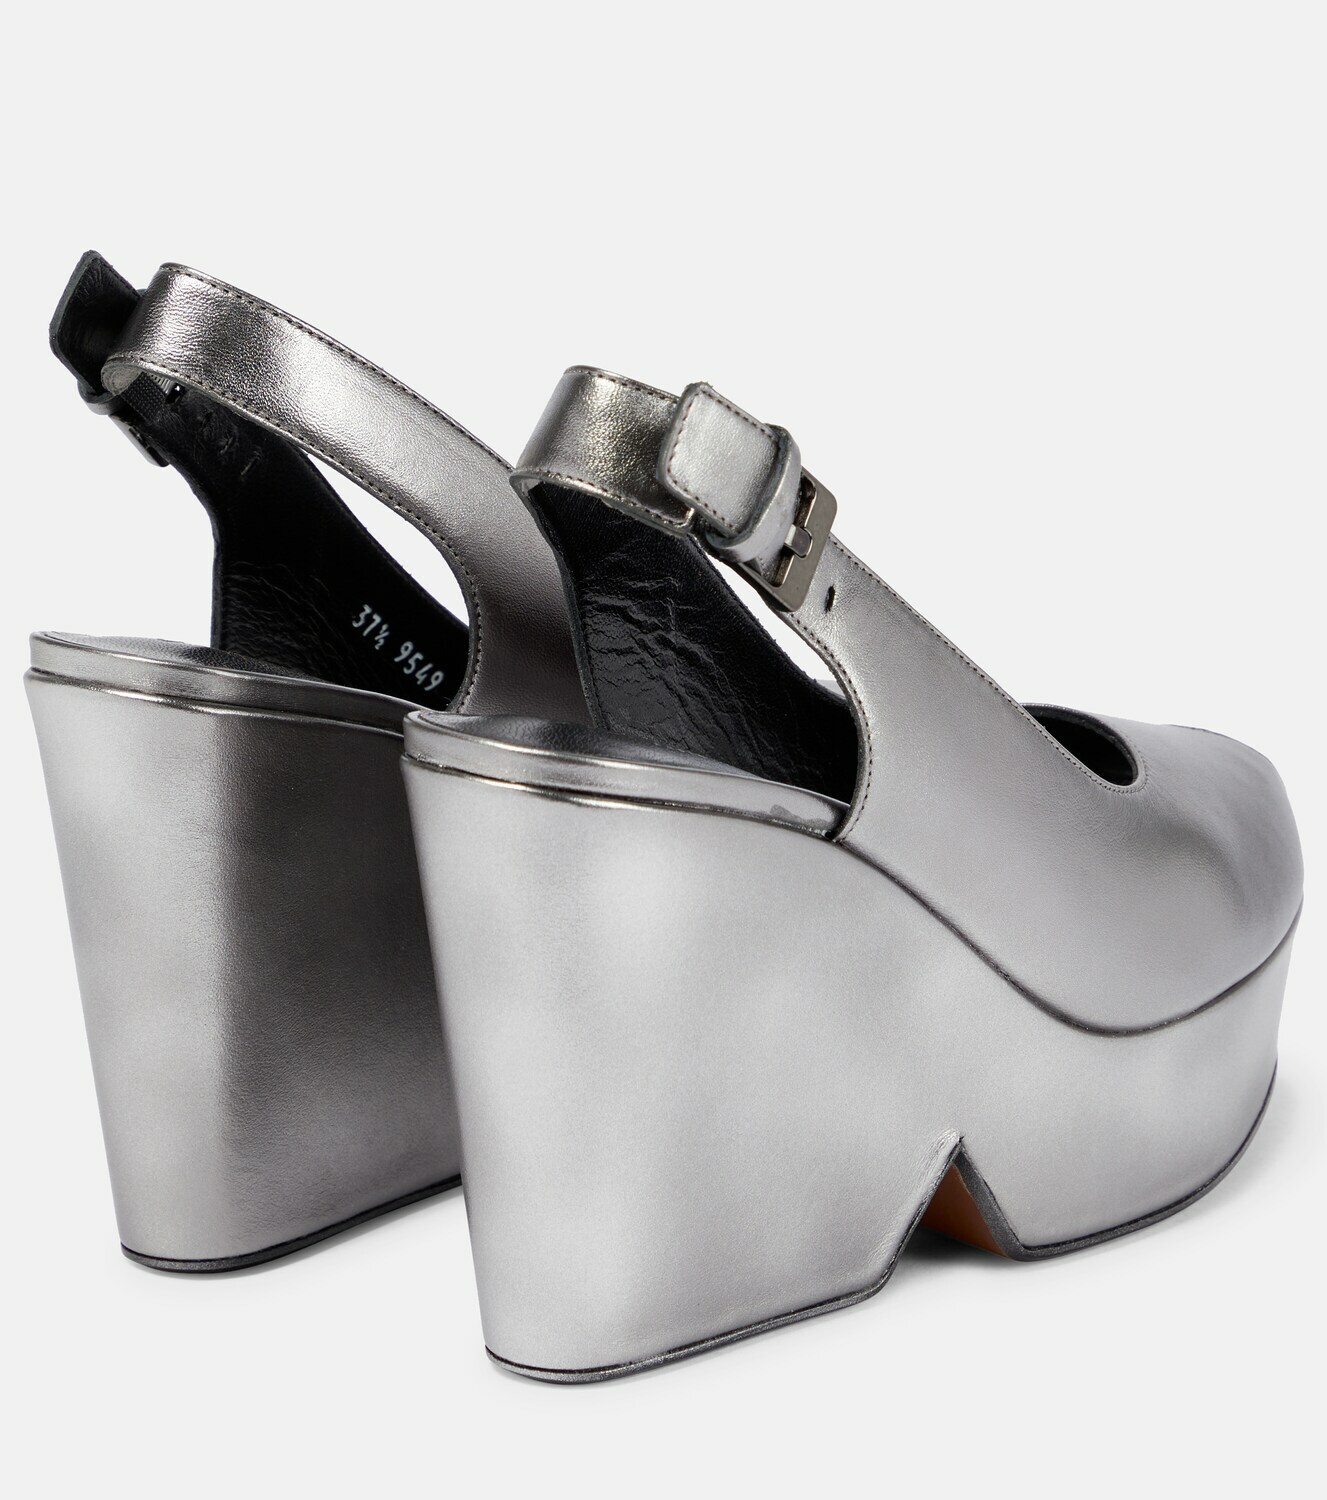 Clergerie - Dylan 110 metallic platform sandals Clergerie